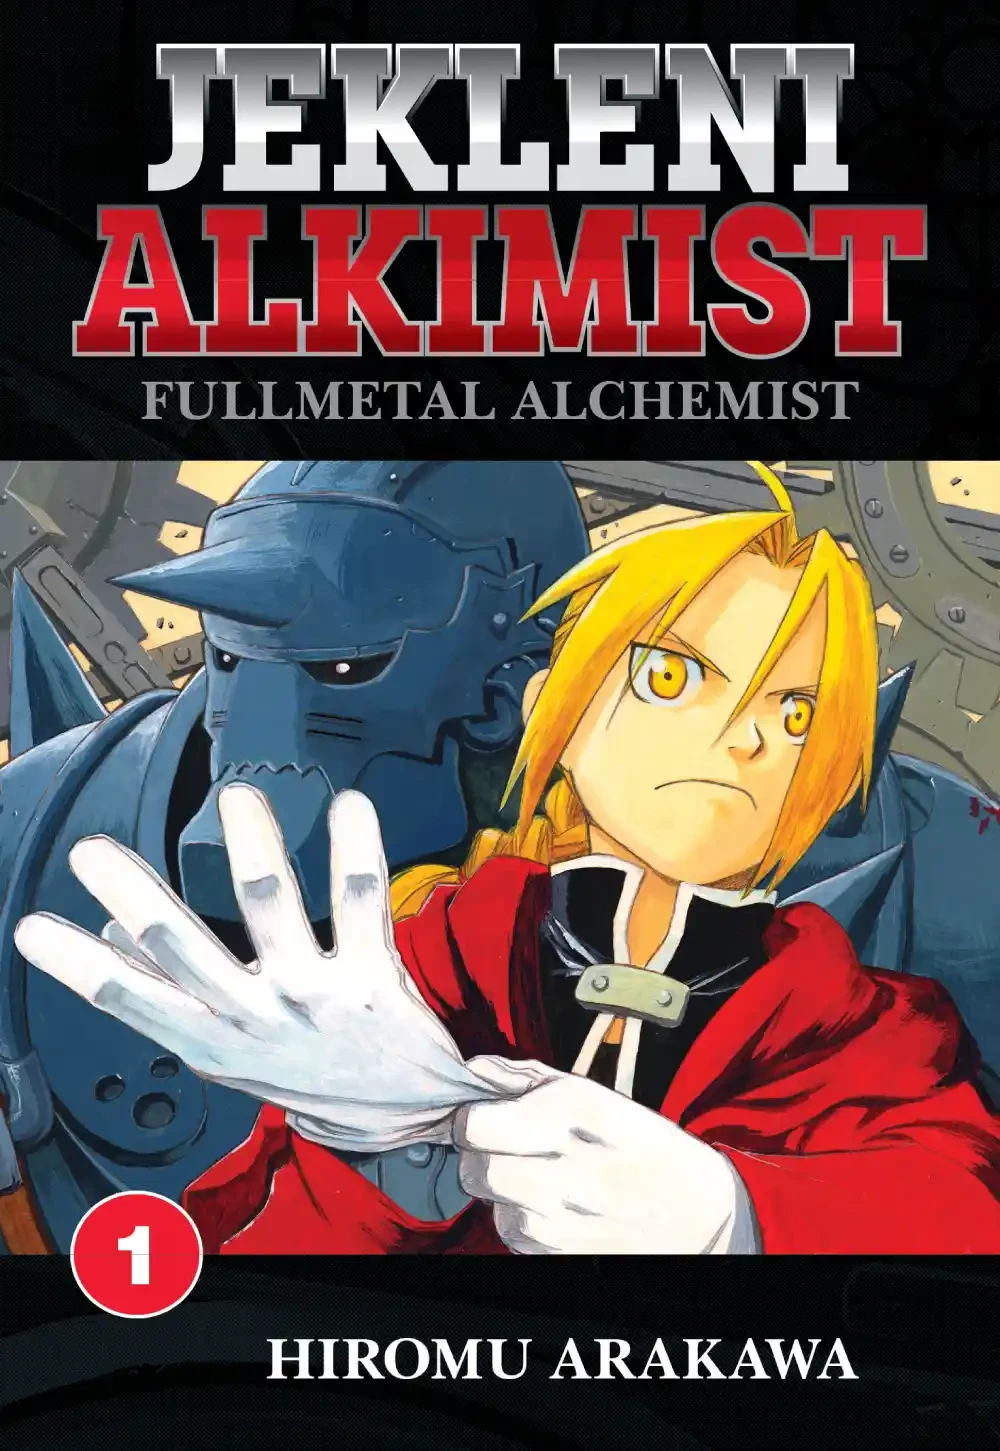 Fullmetal Alchemist manga sedaj na voljo v slovenščini!